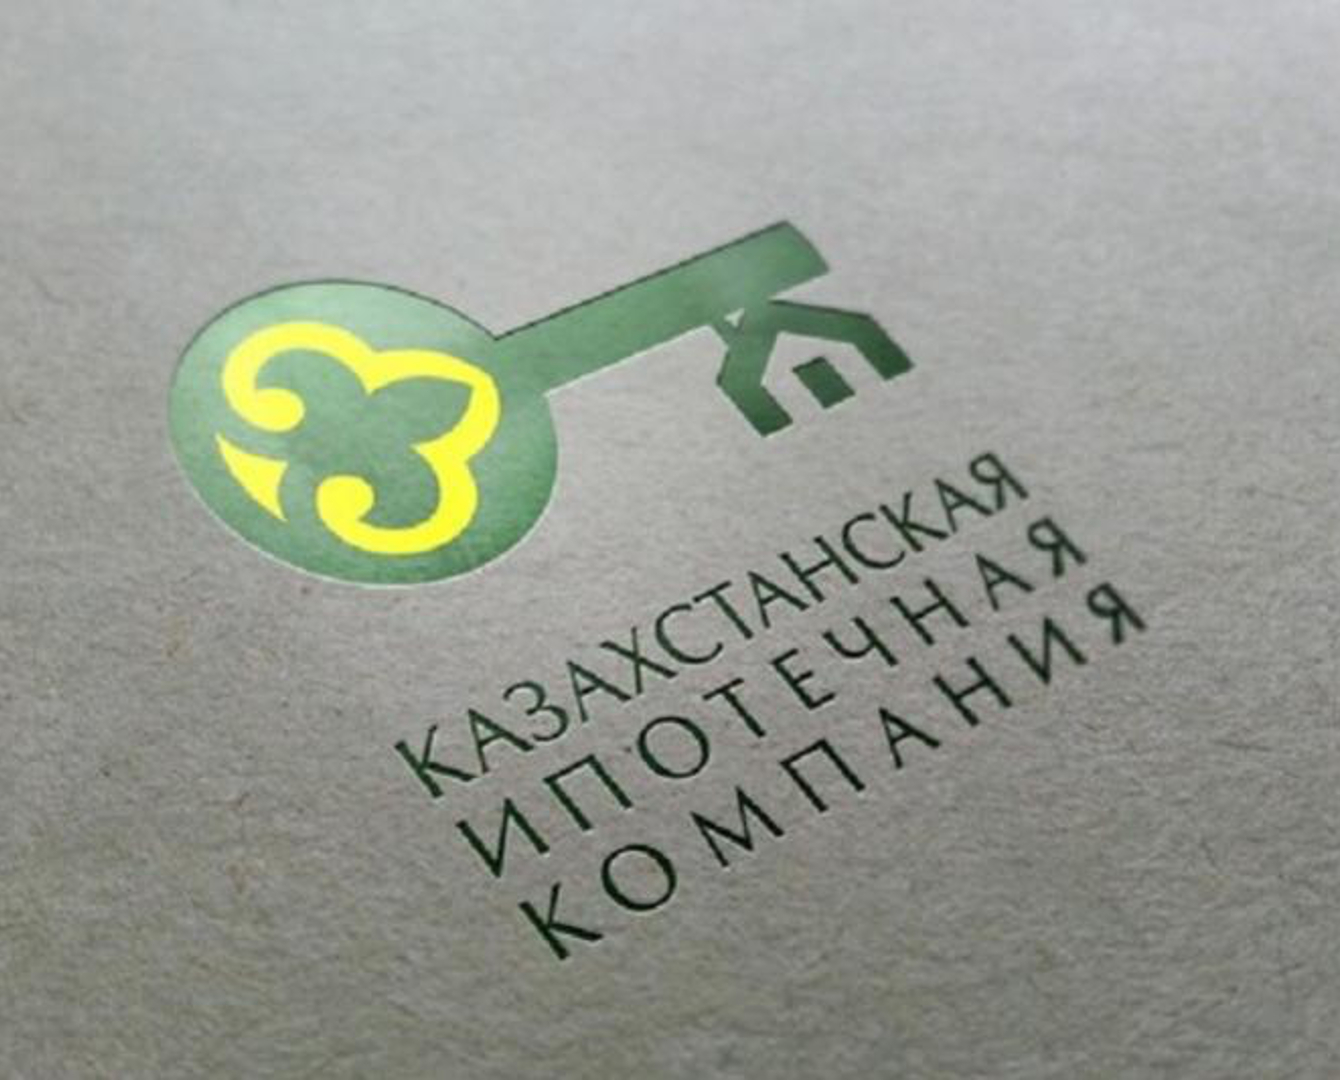 Fitch подтвердило рейтинги Казахстанской Ипотечной Компании на уровне «BBB-», прогноз «Стабильный»